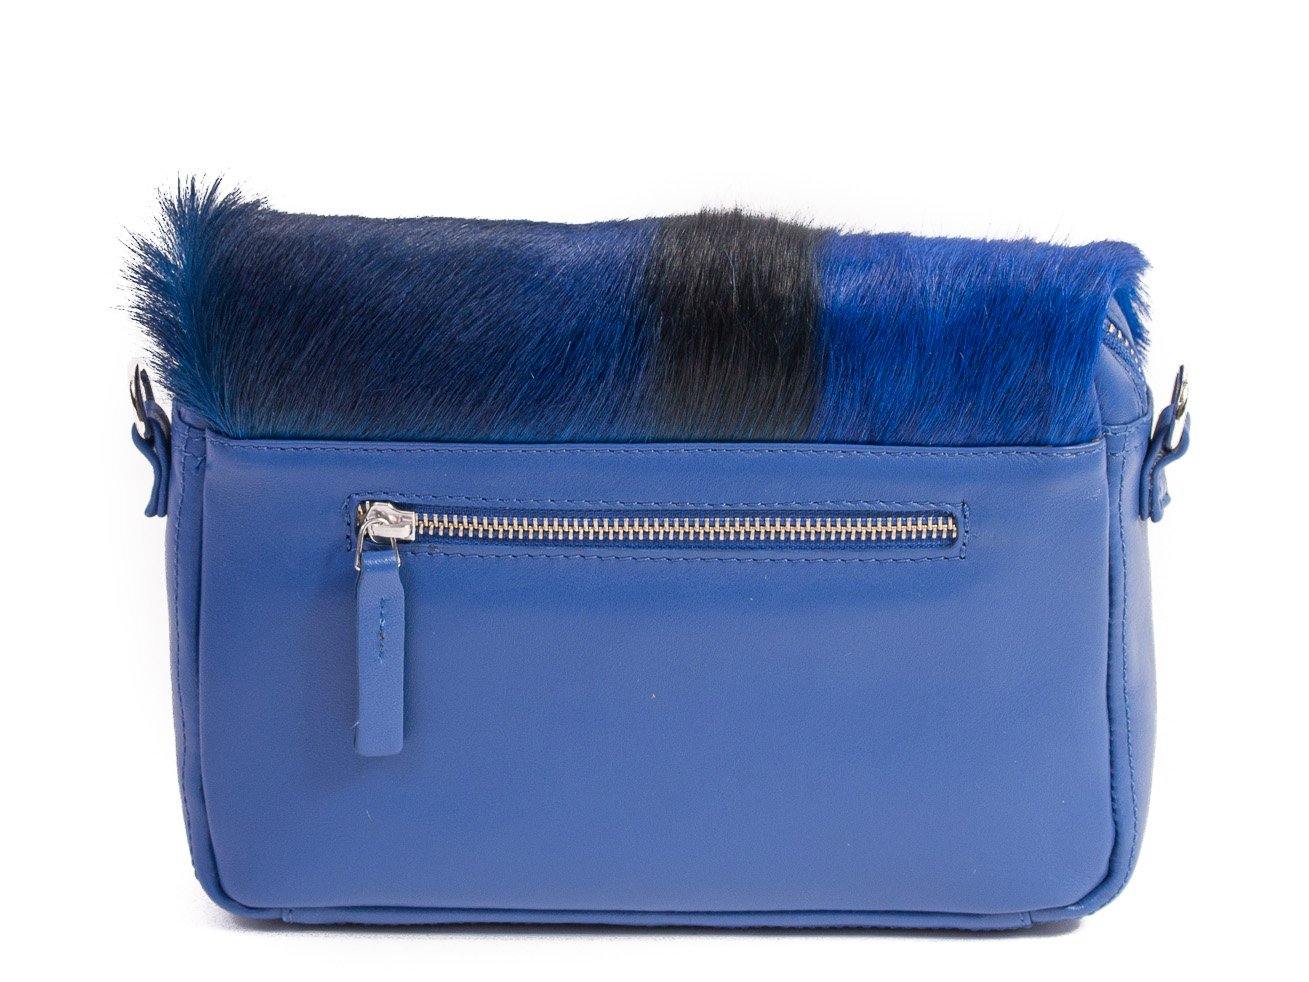 sherene melinda springbok hair-on-hide royal blue leather shoulder bag Stripe back